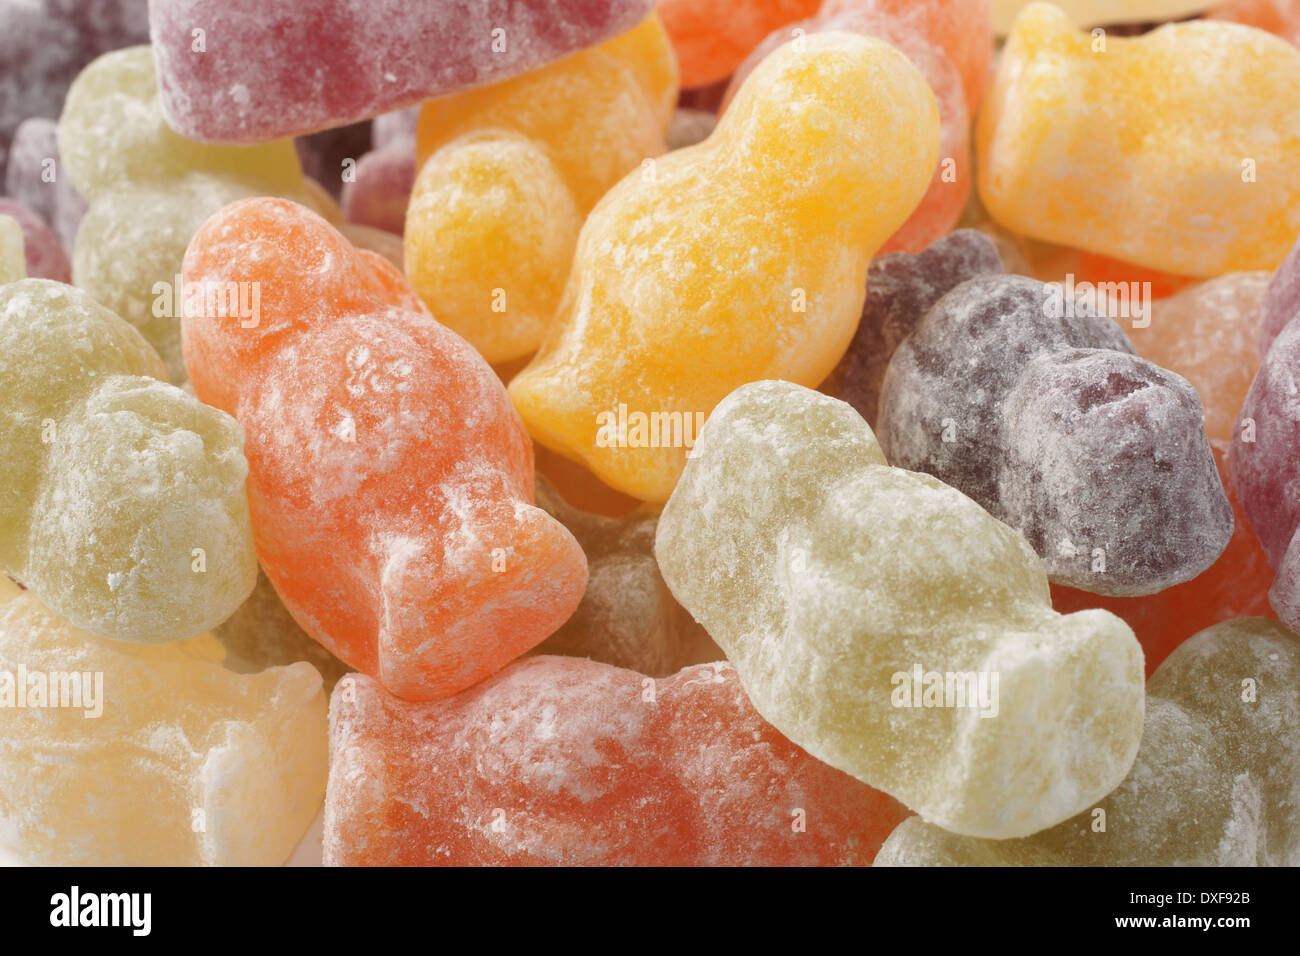 Gummibärchen Sie, eine weiche Süßwaren als Babys in einer Vielzahl von  Farben und Aromen geprägt Stockfotografie - Alamy